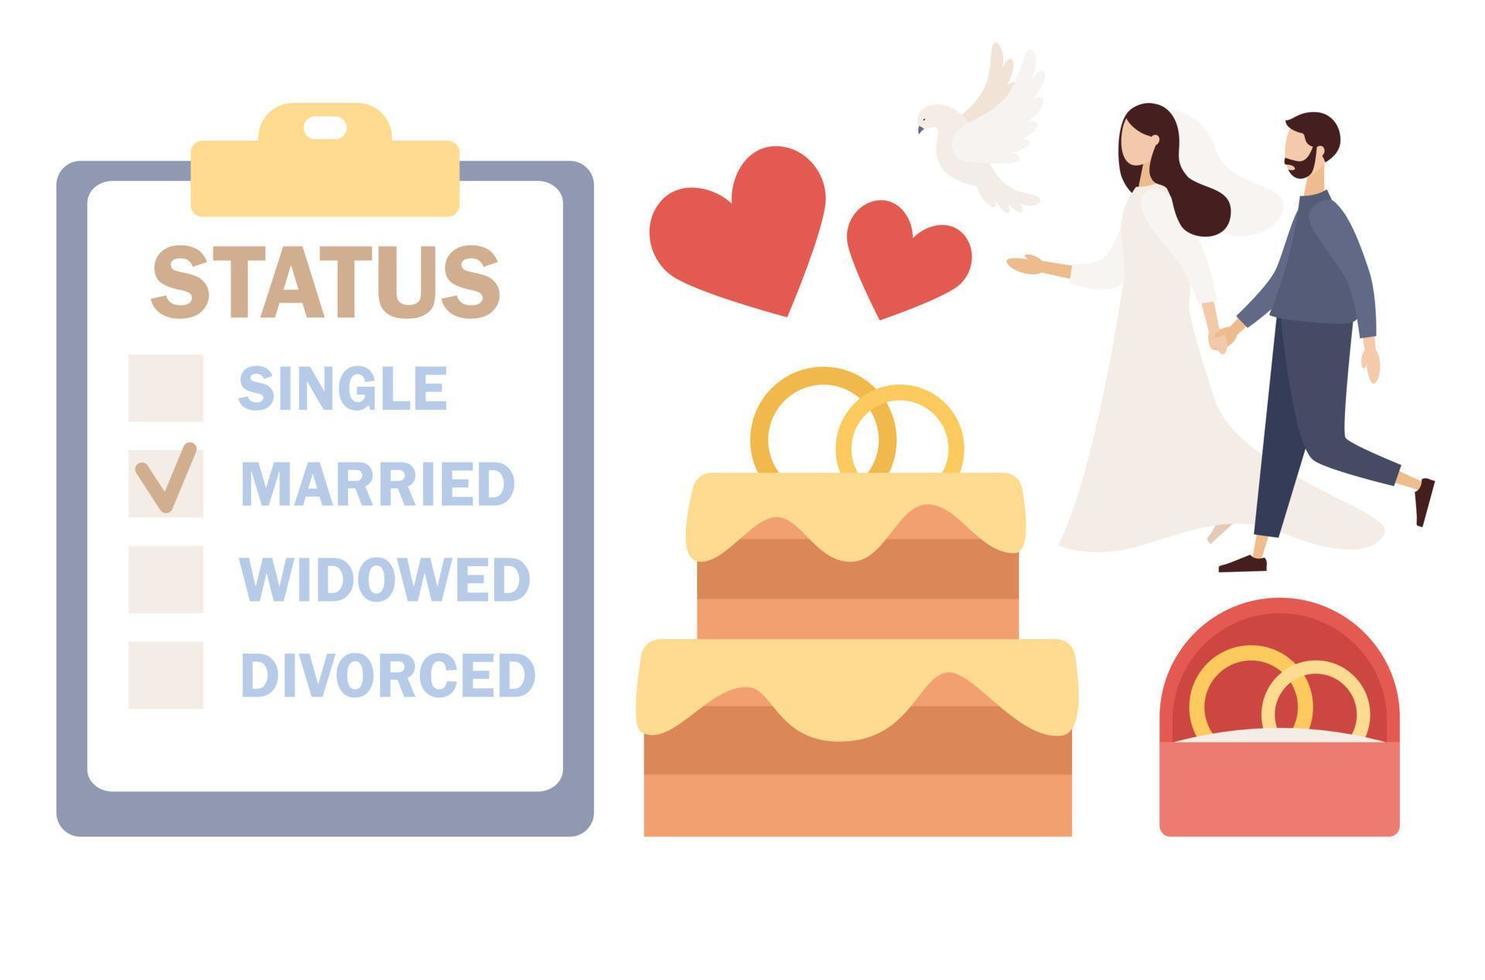 getrouwd paar. echtelijk toestand concept. bruiloft taart, bruiloft ringen, harten, duif. vector vlak illustratie